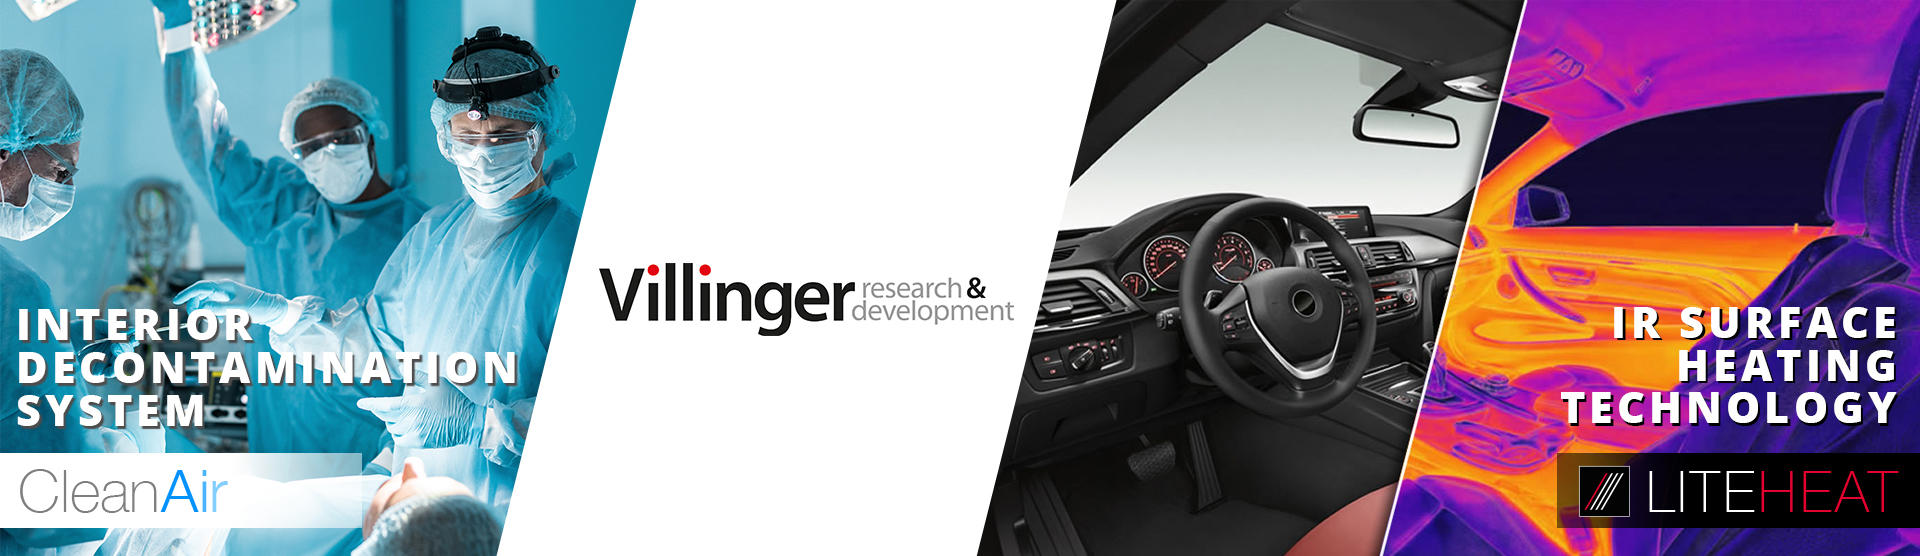 Villinger GmbH